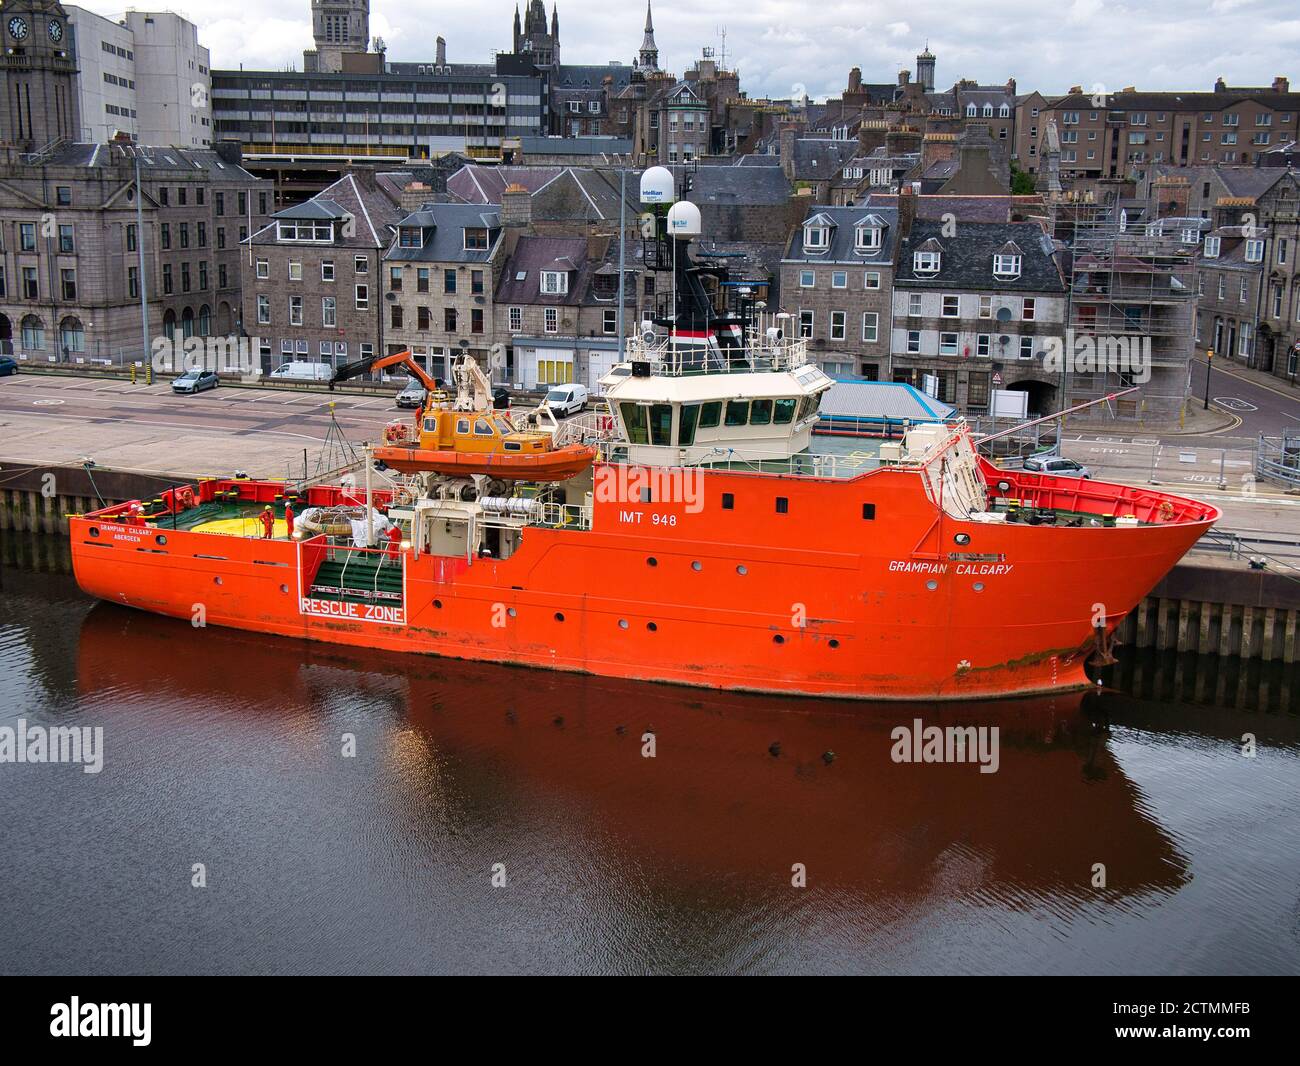 Im Hafen von Aberdeen, Schottland, liegt das Grampian Calgary, ein Standby Safety Vessel / Emergency Response and Rescue Vessel. Erbaut 2010 und oper Stockfoto